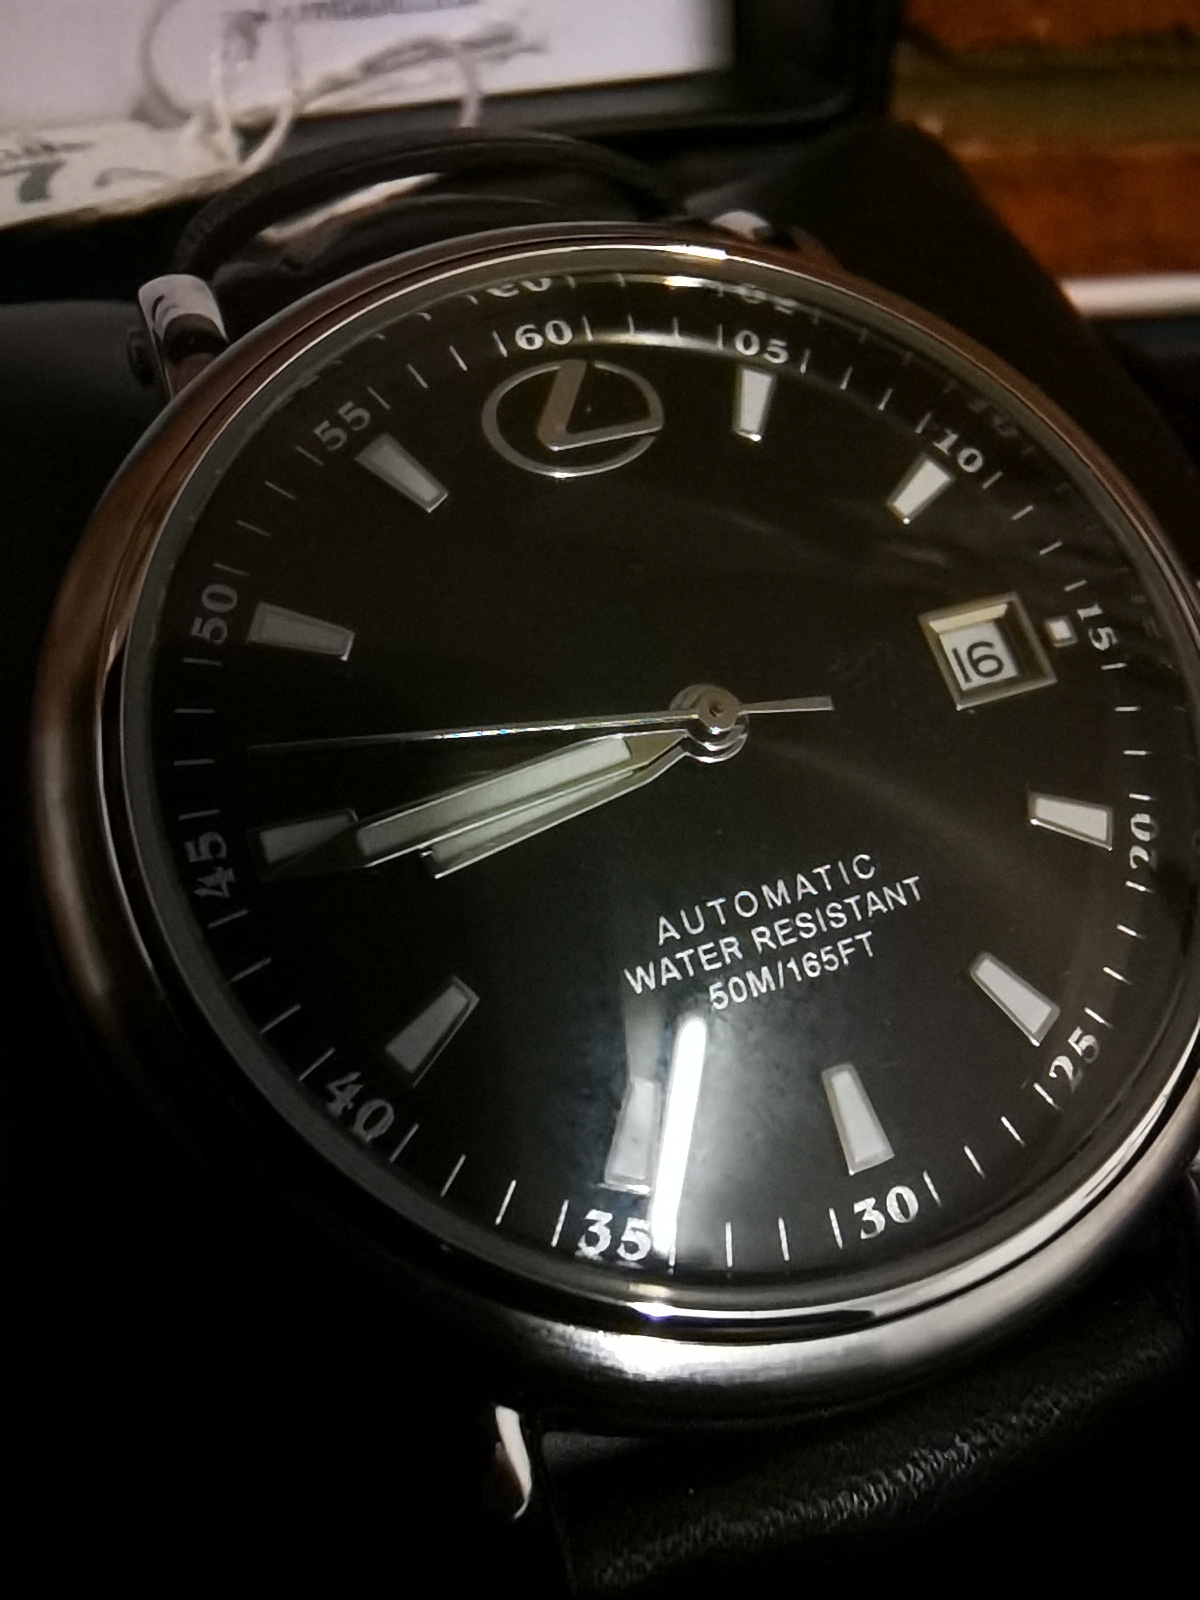 Lexus watch - Image 2 of 3